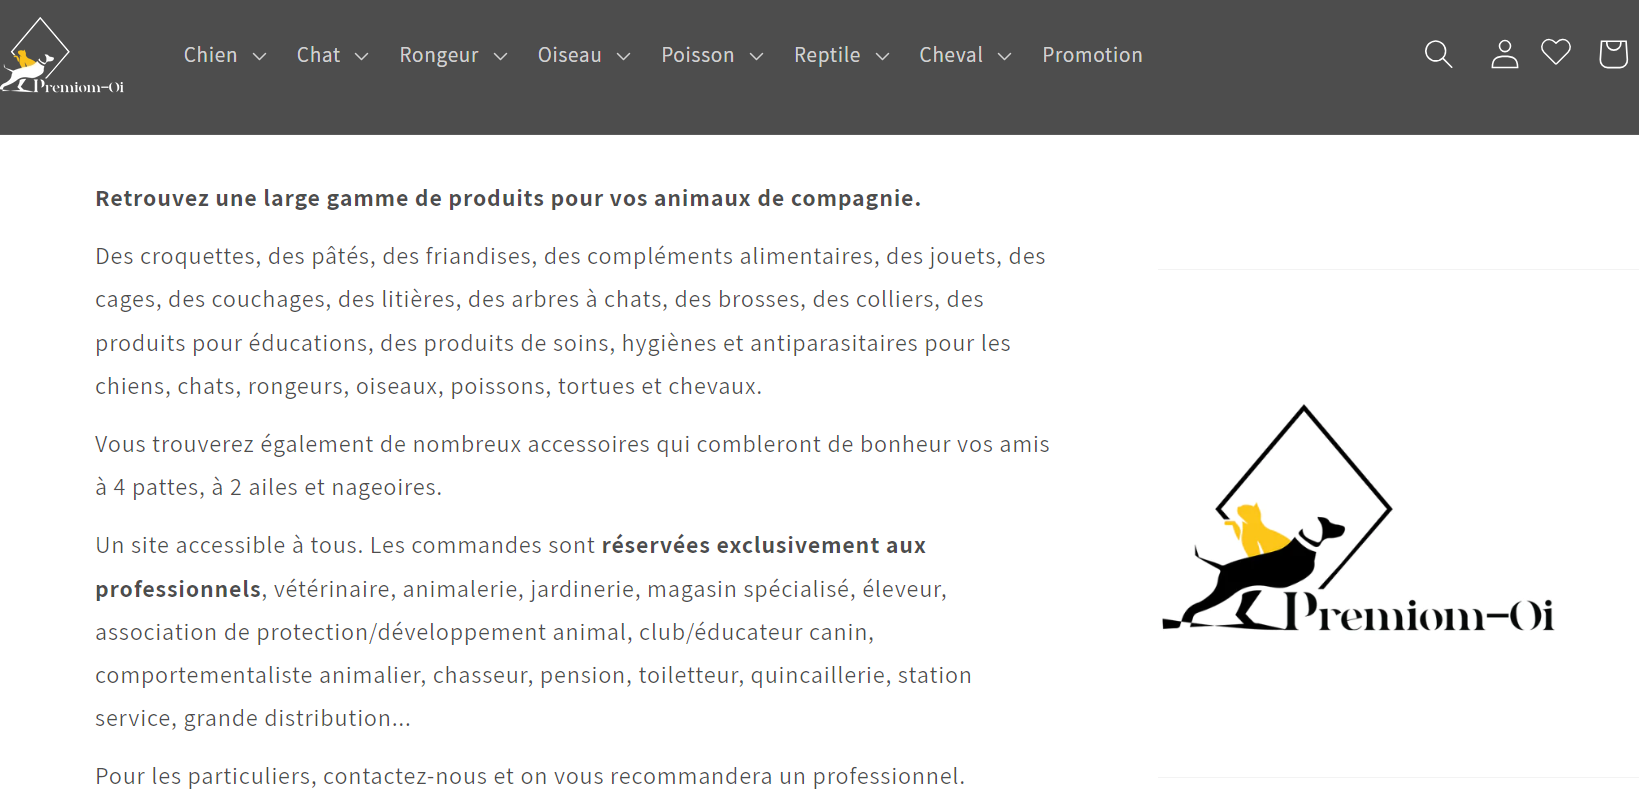 Aperçu de la page d'accueil du site Shopify Premiom-OI